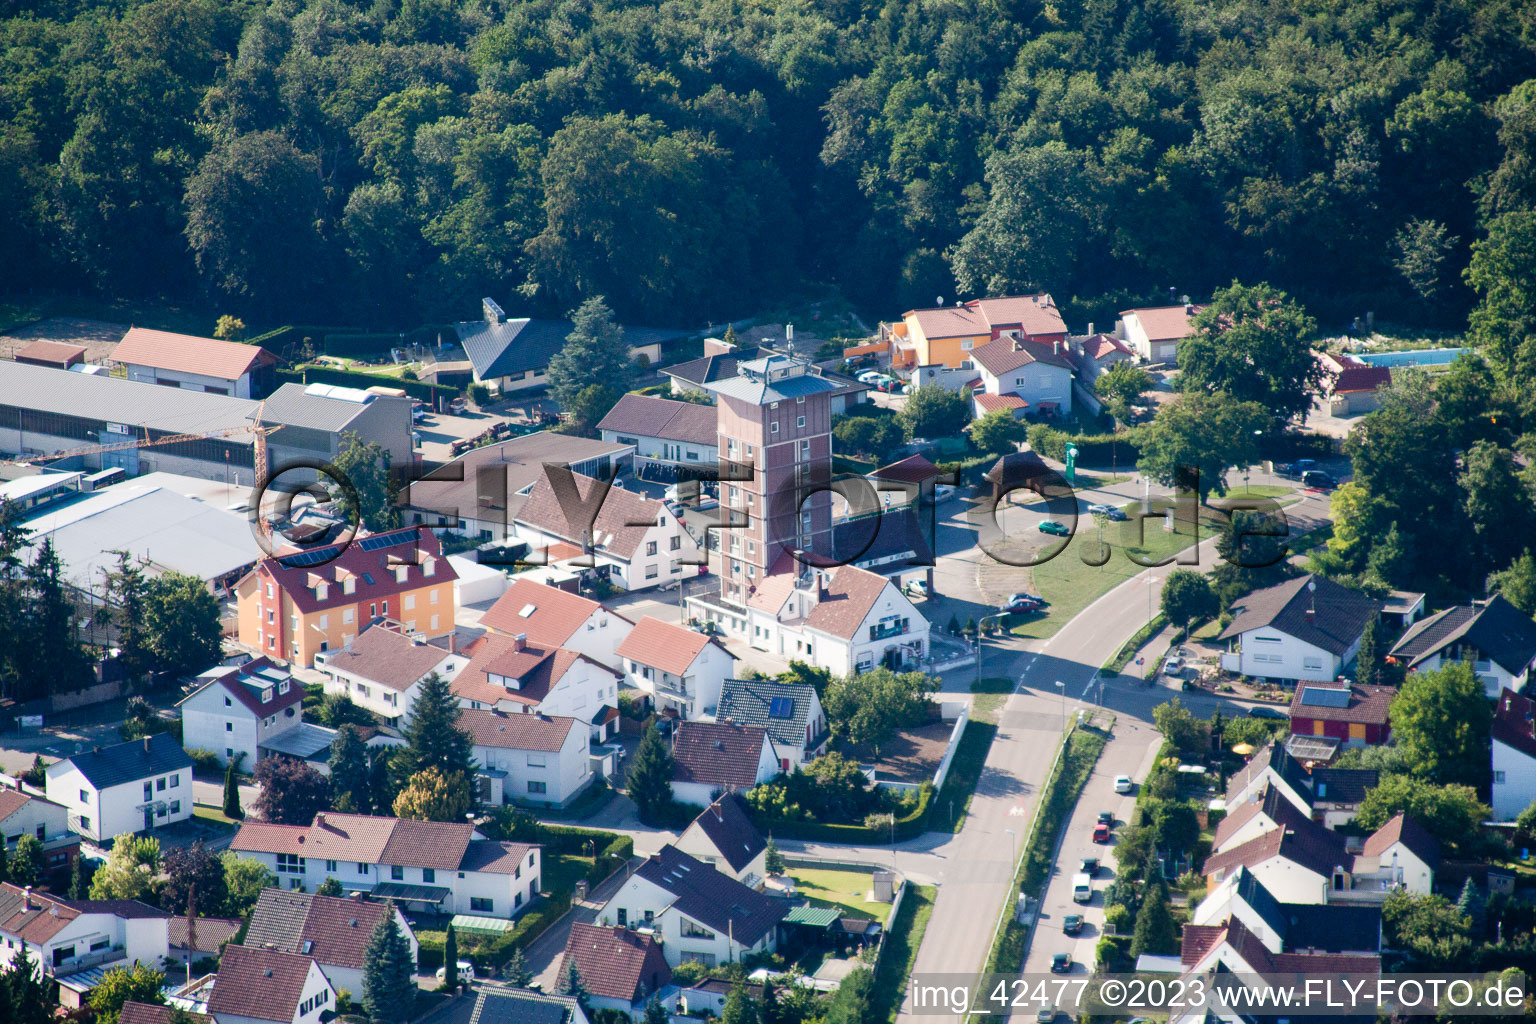 Vue oblique de Gratte-ciel Ludovici à Jockgrim dans le département Rhénanie-Palatinat, Allemagne